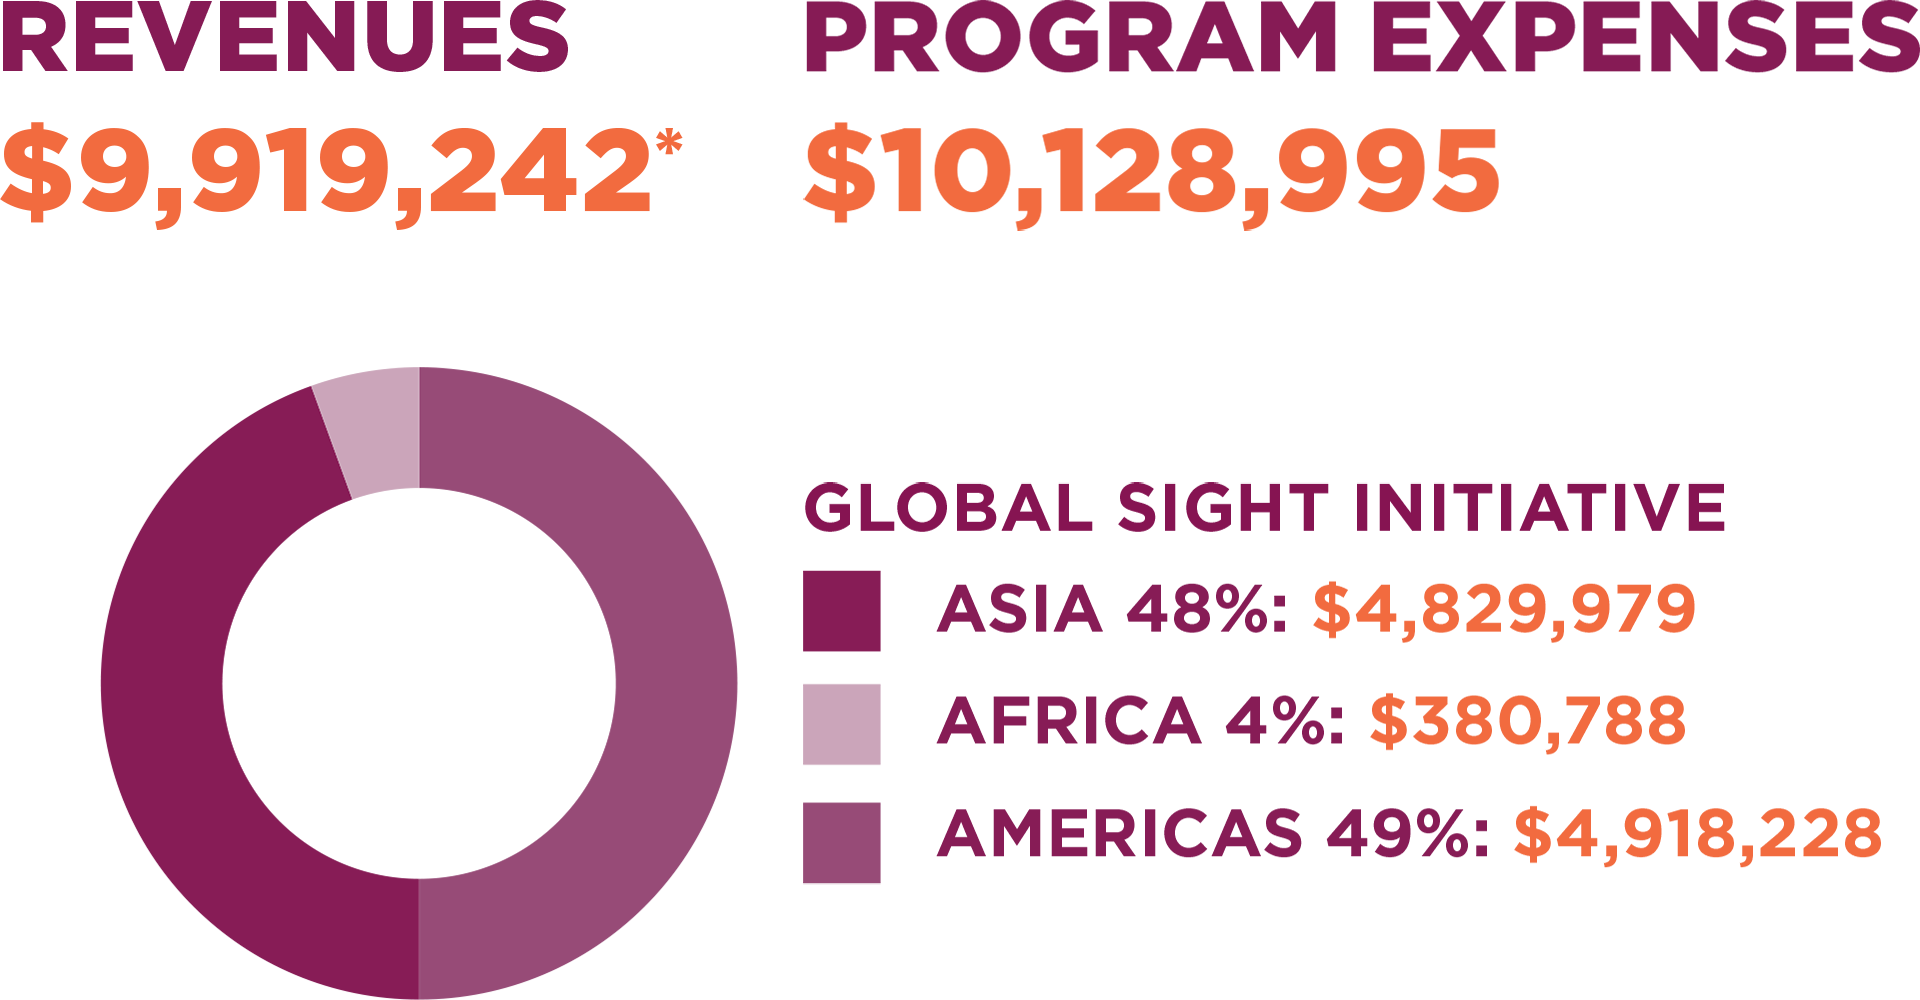 Revenues: $9,919,242*. Program Expenses: $10,128,995. Asia 48%: $4,829,979. Africa 4%: $380,788. Americas 49%: $4,918,228.